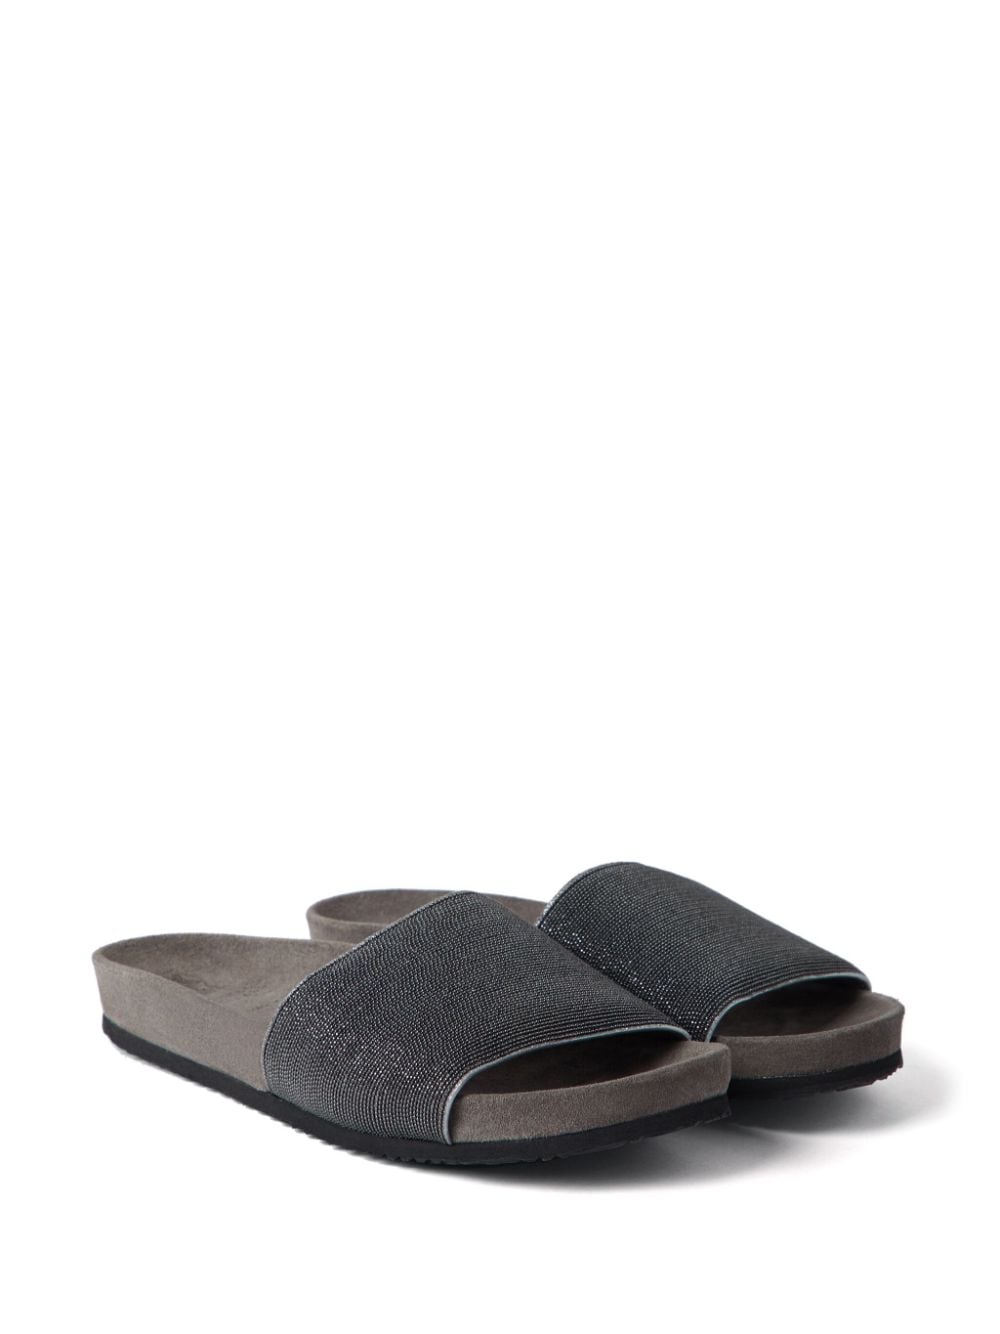 Brunello Cucinelli Sandals Grey